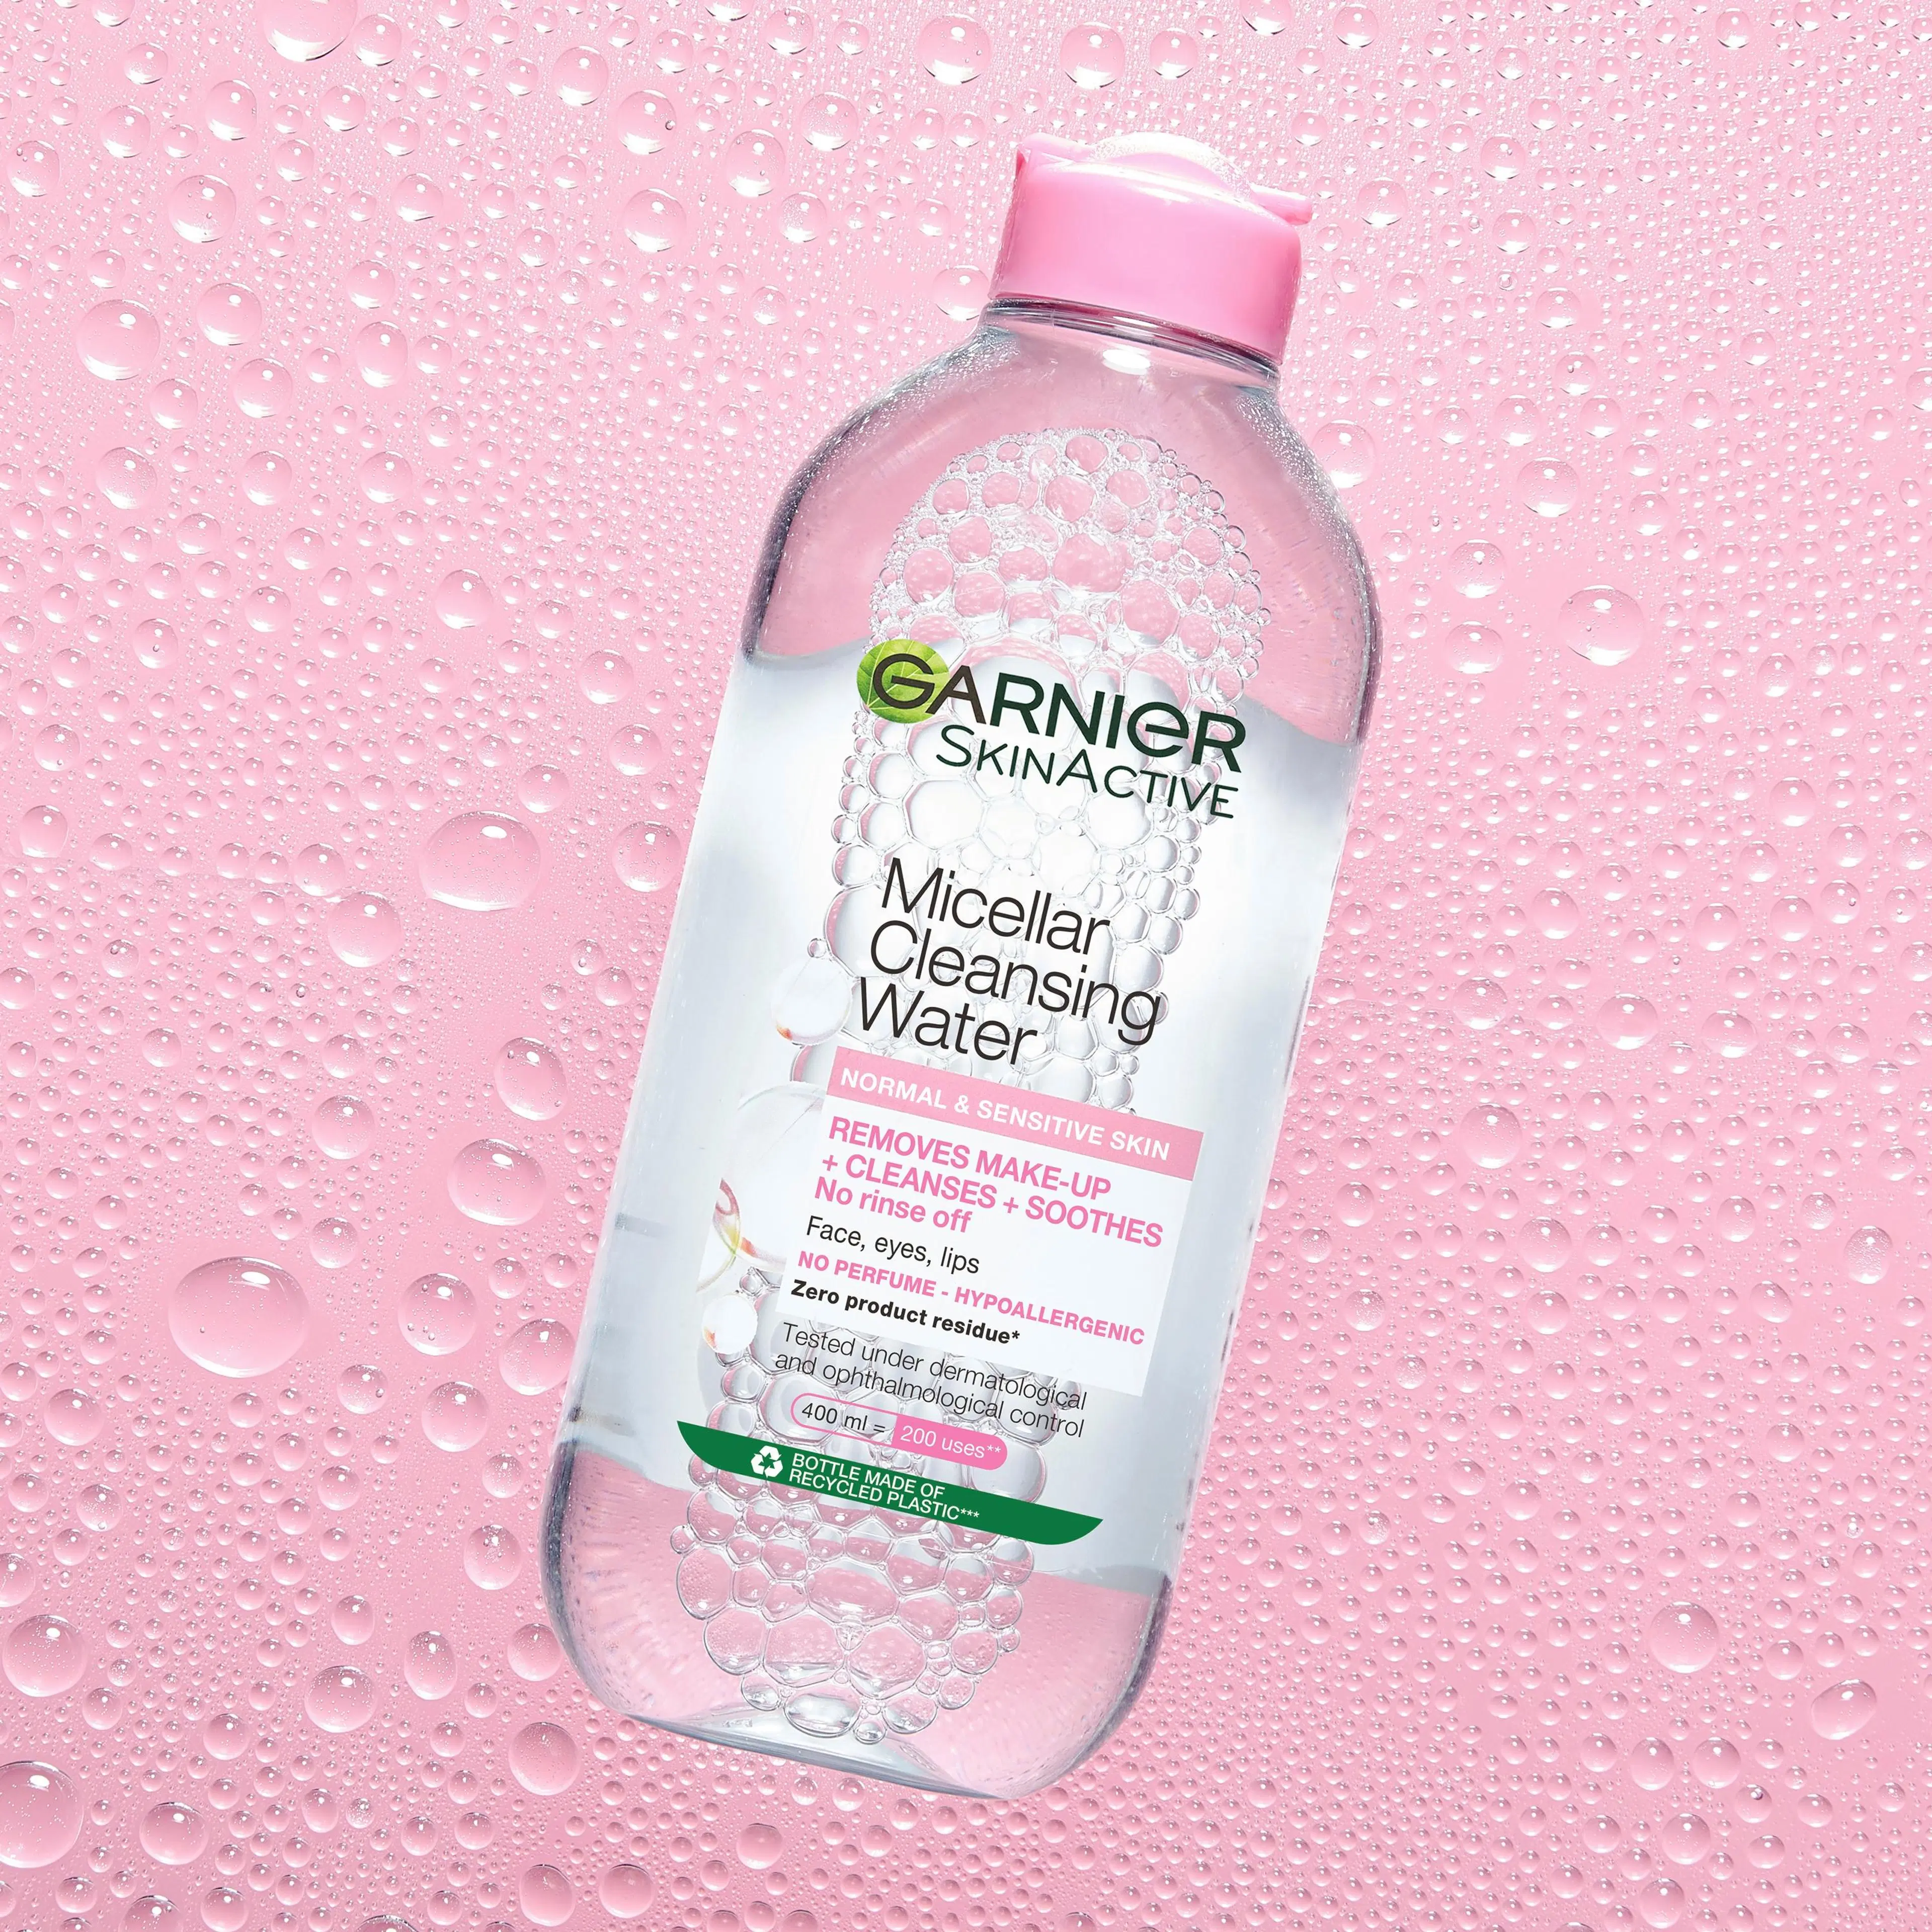 Garnier Skin Active Micellar puhdistusvesi normaalille ja herkälle iholle  400ml